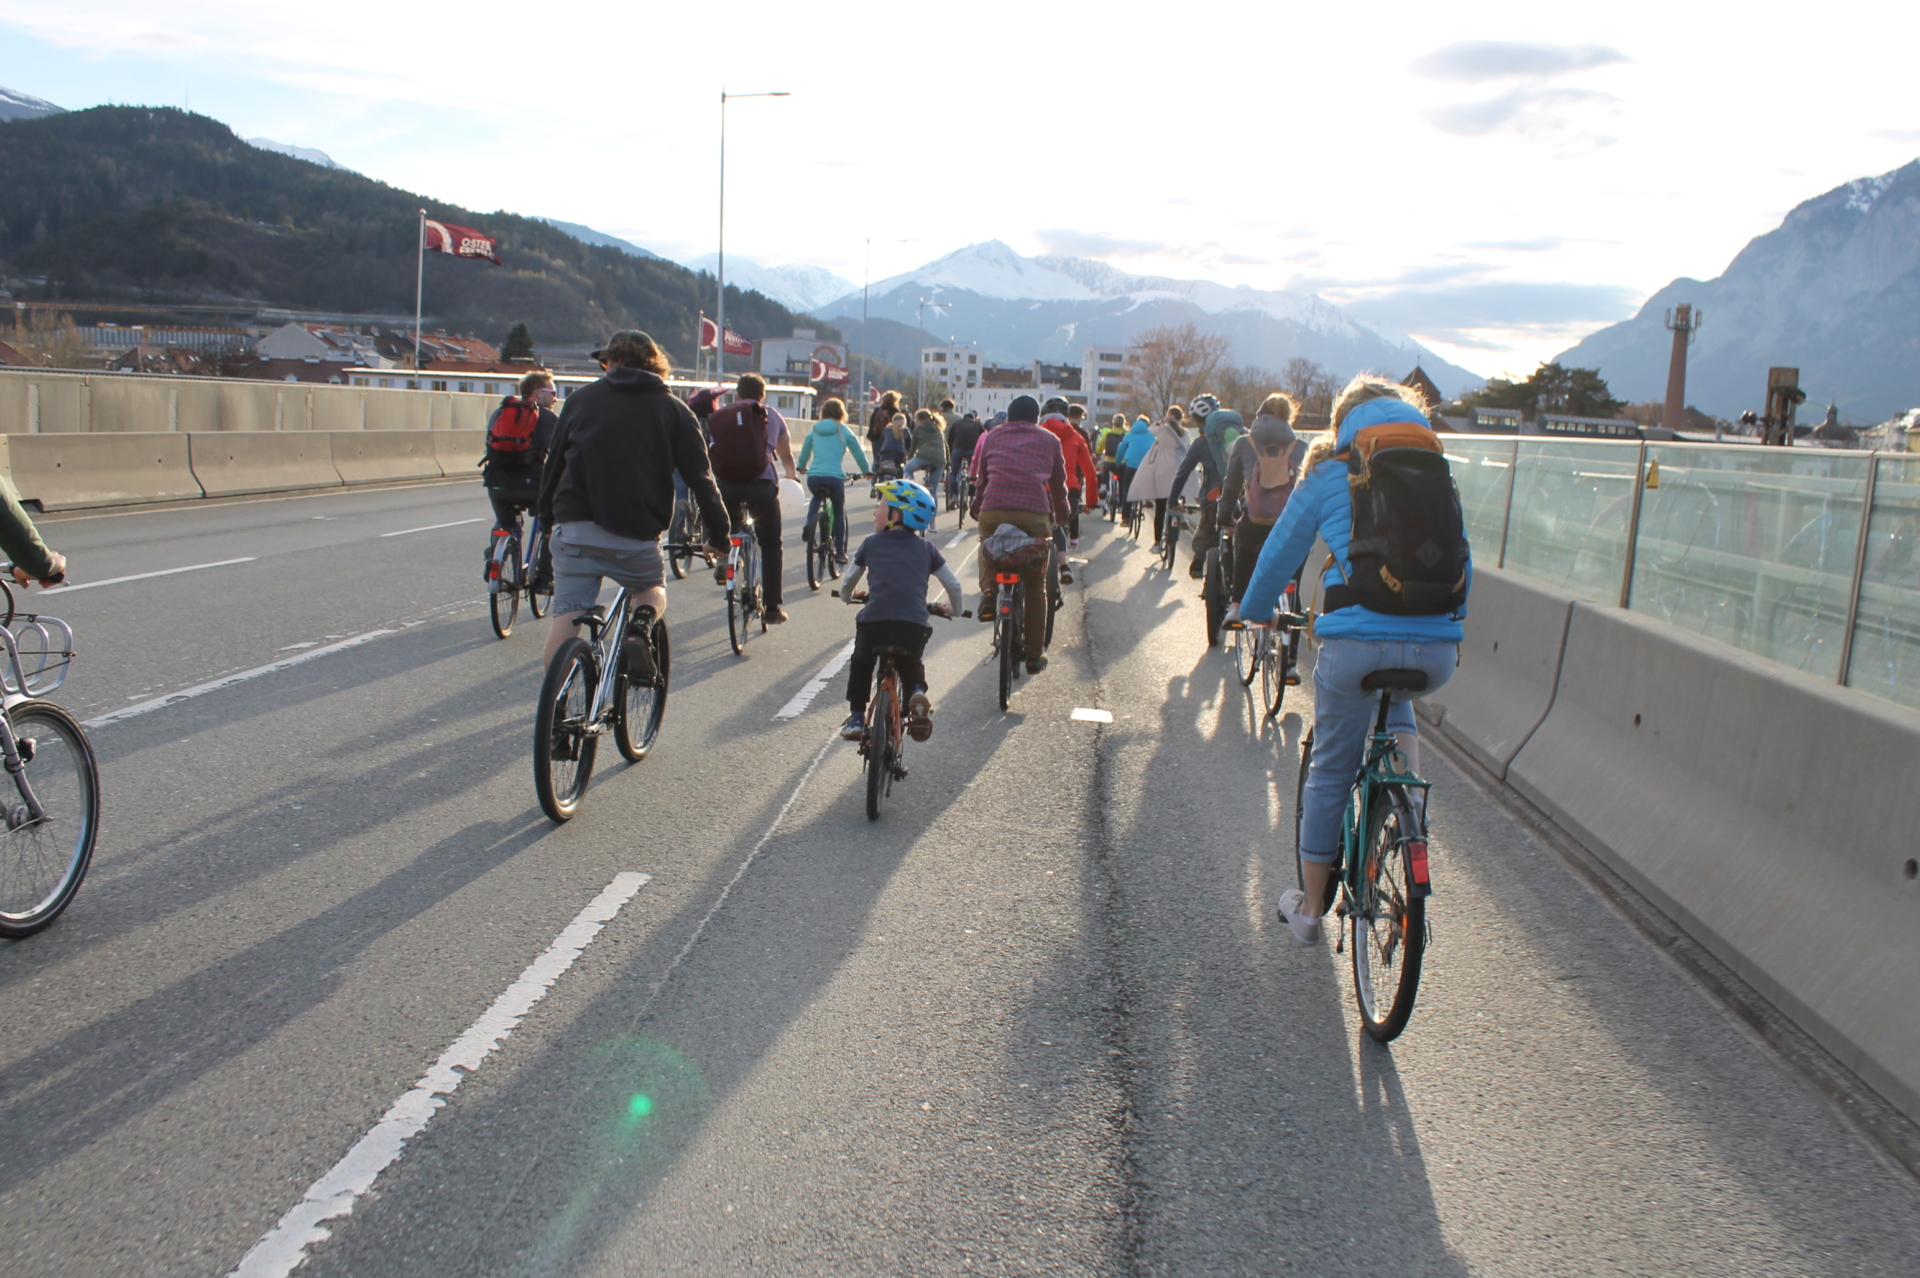 Zum Start von Tirol radelt findet am 20. März eine Radparade durch Innsbruck statt. Los geht’s um 18 Uhr am Rennweg. Je lauter und bunter, desto besser!